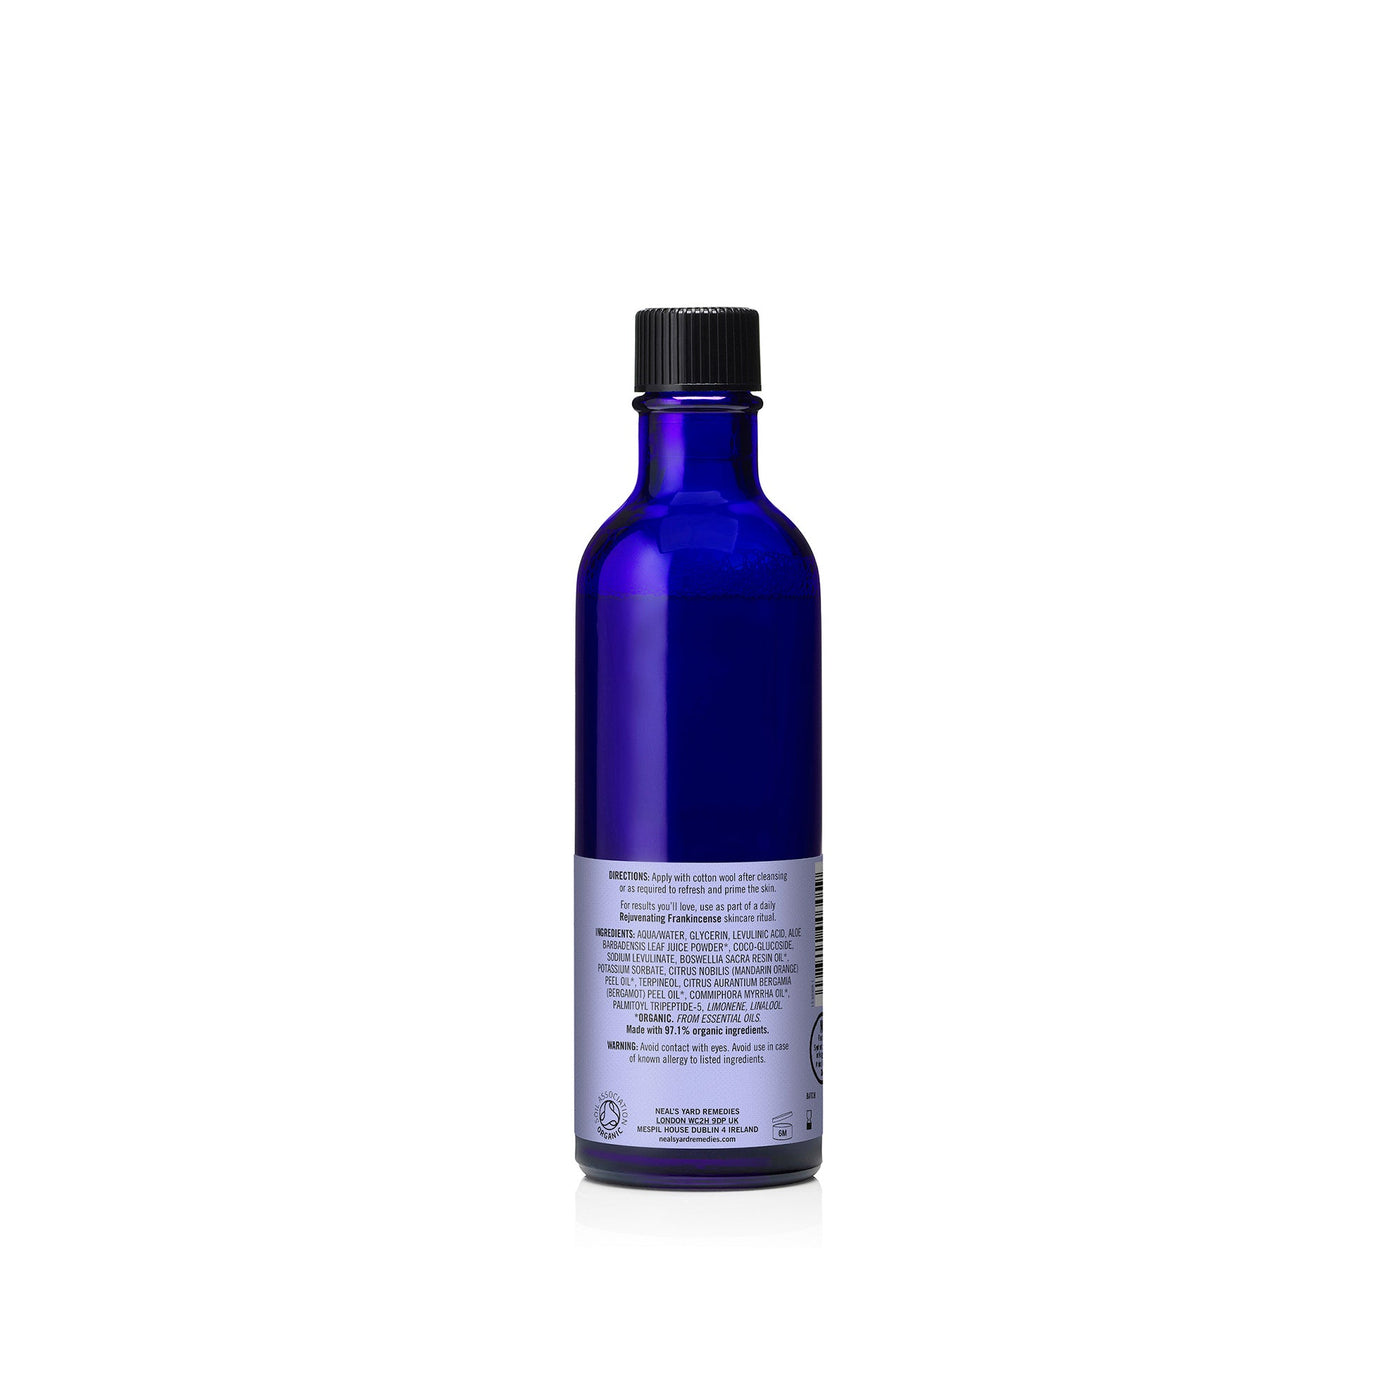 rejuvenating-frankincense-toner-back-0305-high-res-2000px.jpg